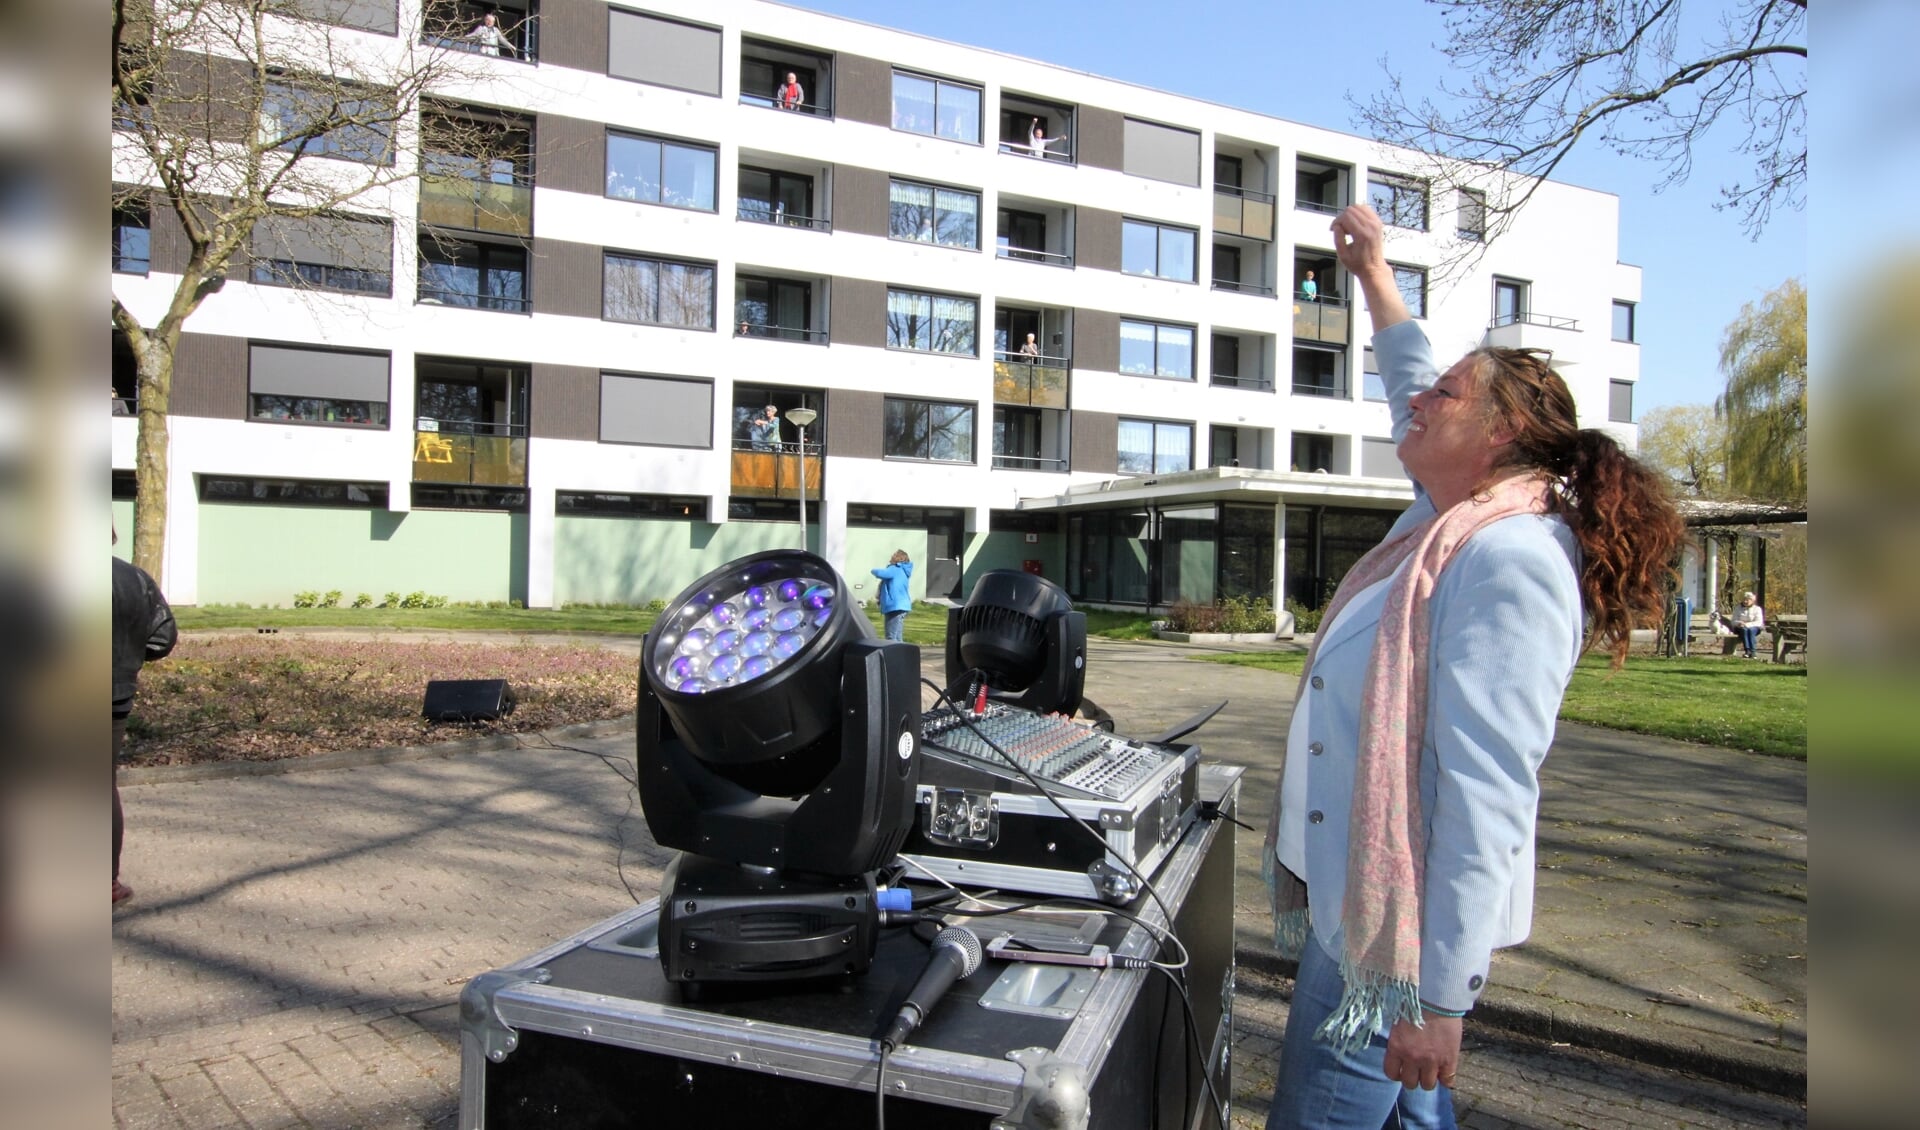 • Sharon Tollenaar tijdens 'Balkonradio' voor de flats aan de Gouden Regen.